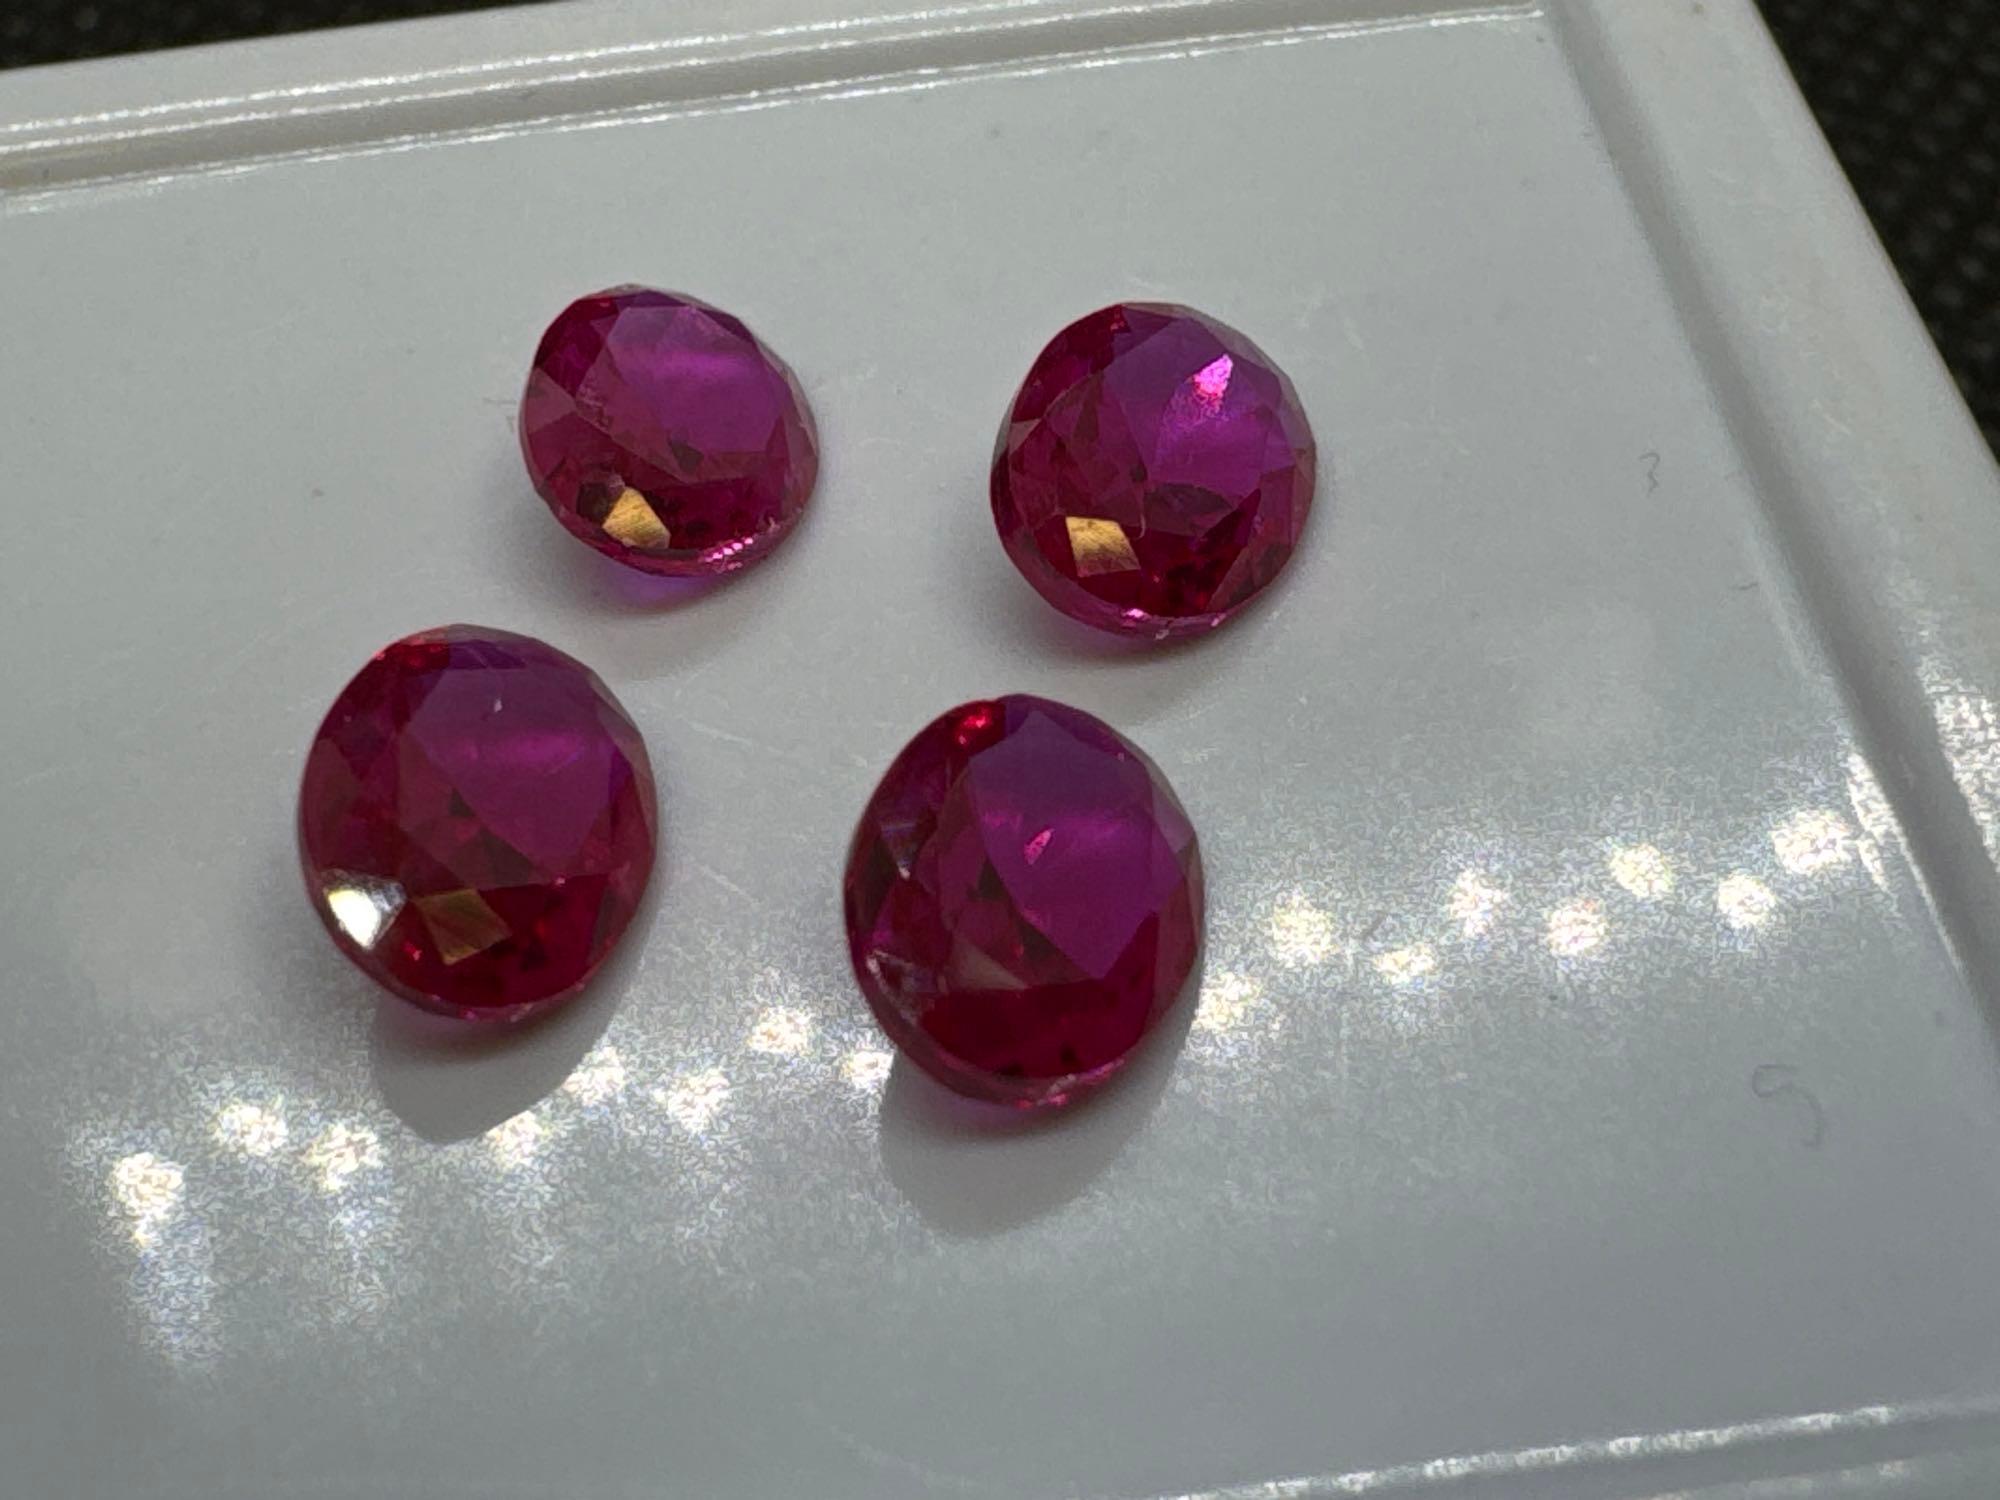 4x Red Heart Cut Ruby Gemstones 3.10 Ct